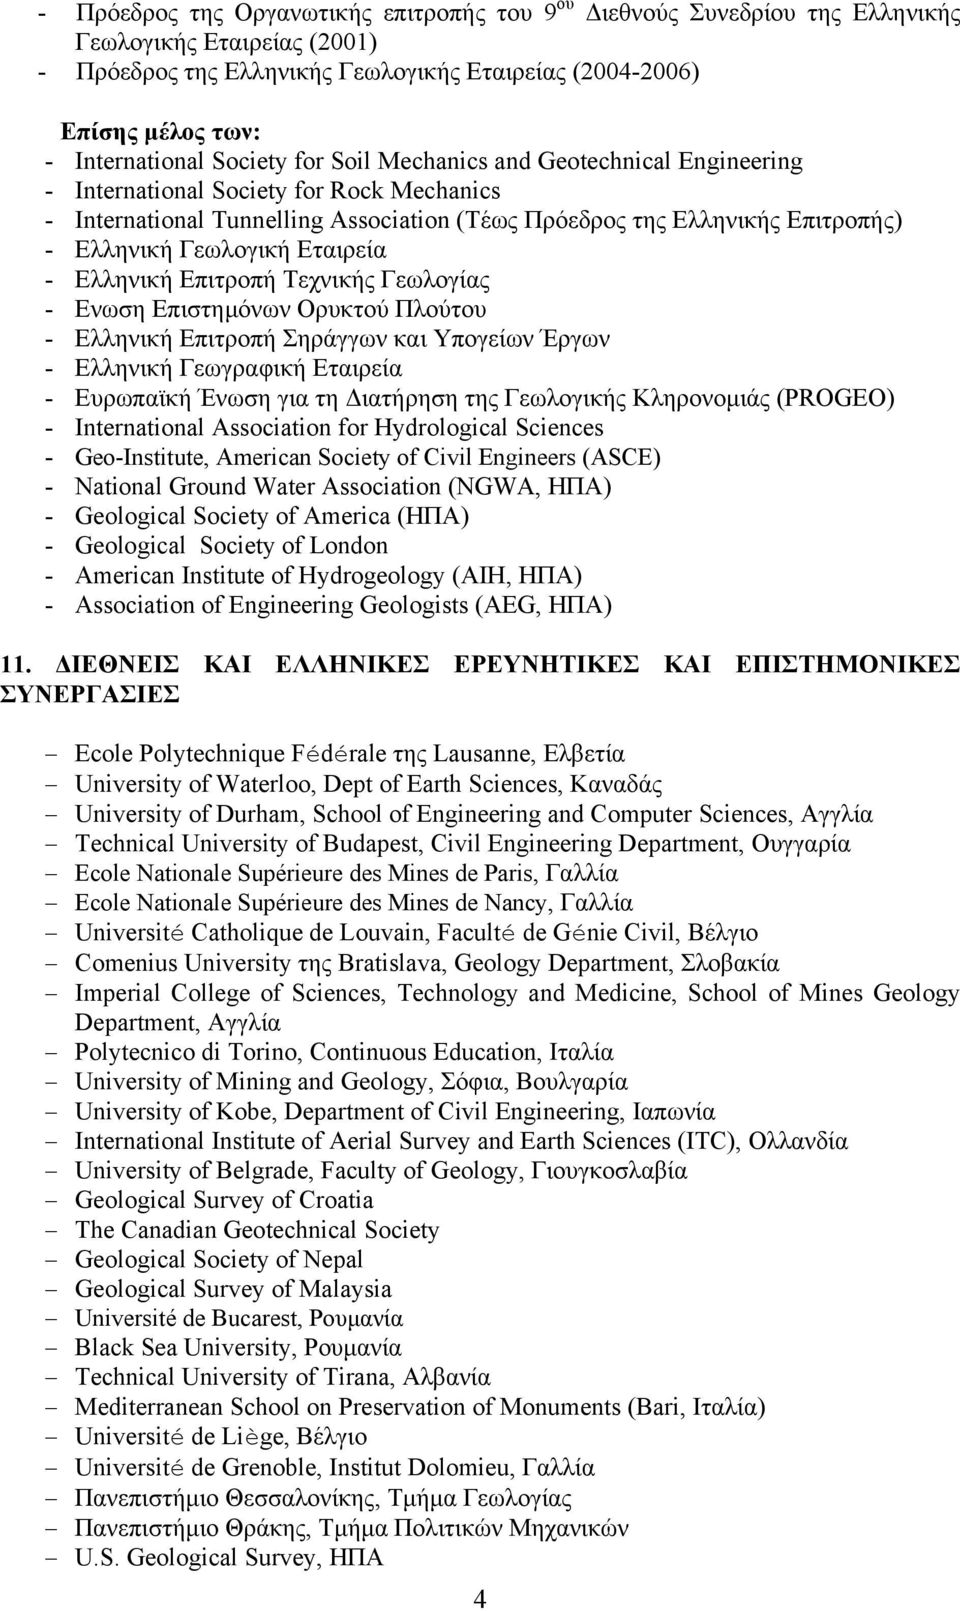 Εταιρεία - Ελληνική Επιτροπή Τεχνικής Γεωλογίας - Ενωση Επιστηµόνων Ορυκτού Πλούτου - Ελληνική Επιτροπή Σηράγγων και Υπογείων Έργων - Ελληνική Γεωγραφική Εταιρεία - Ευρωπαϊκή Ένωση για τη ιατήρηση